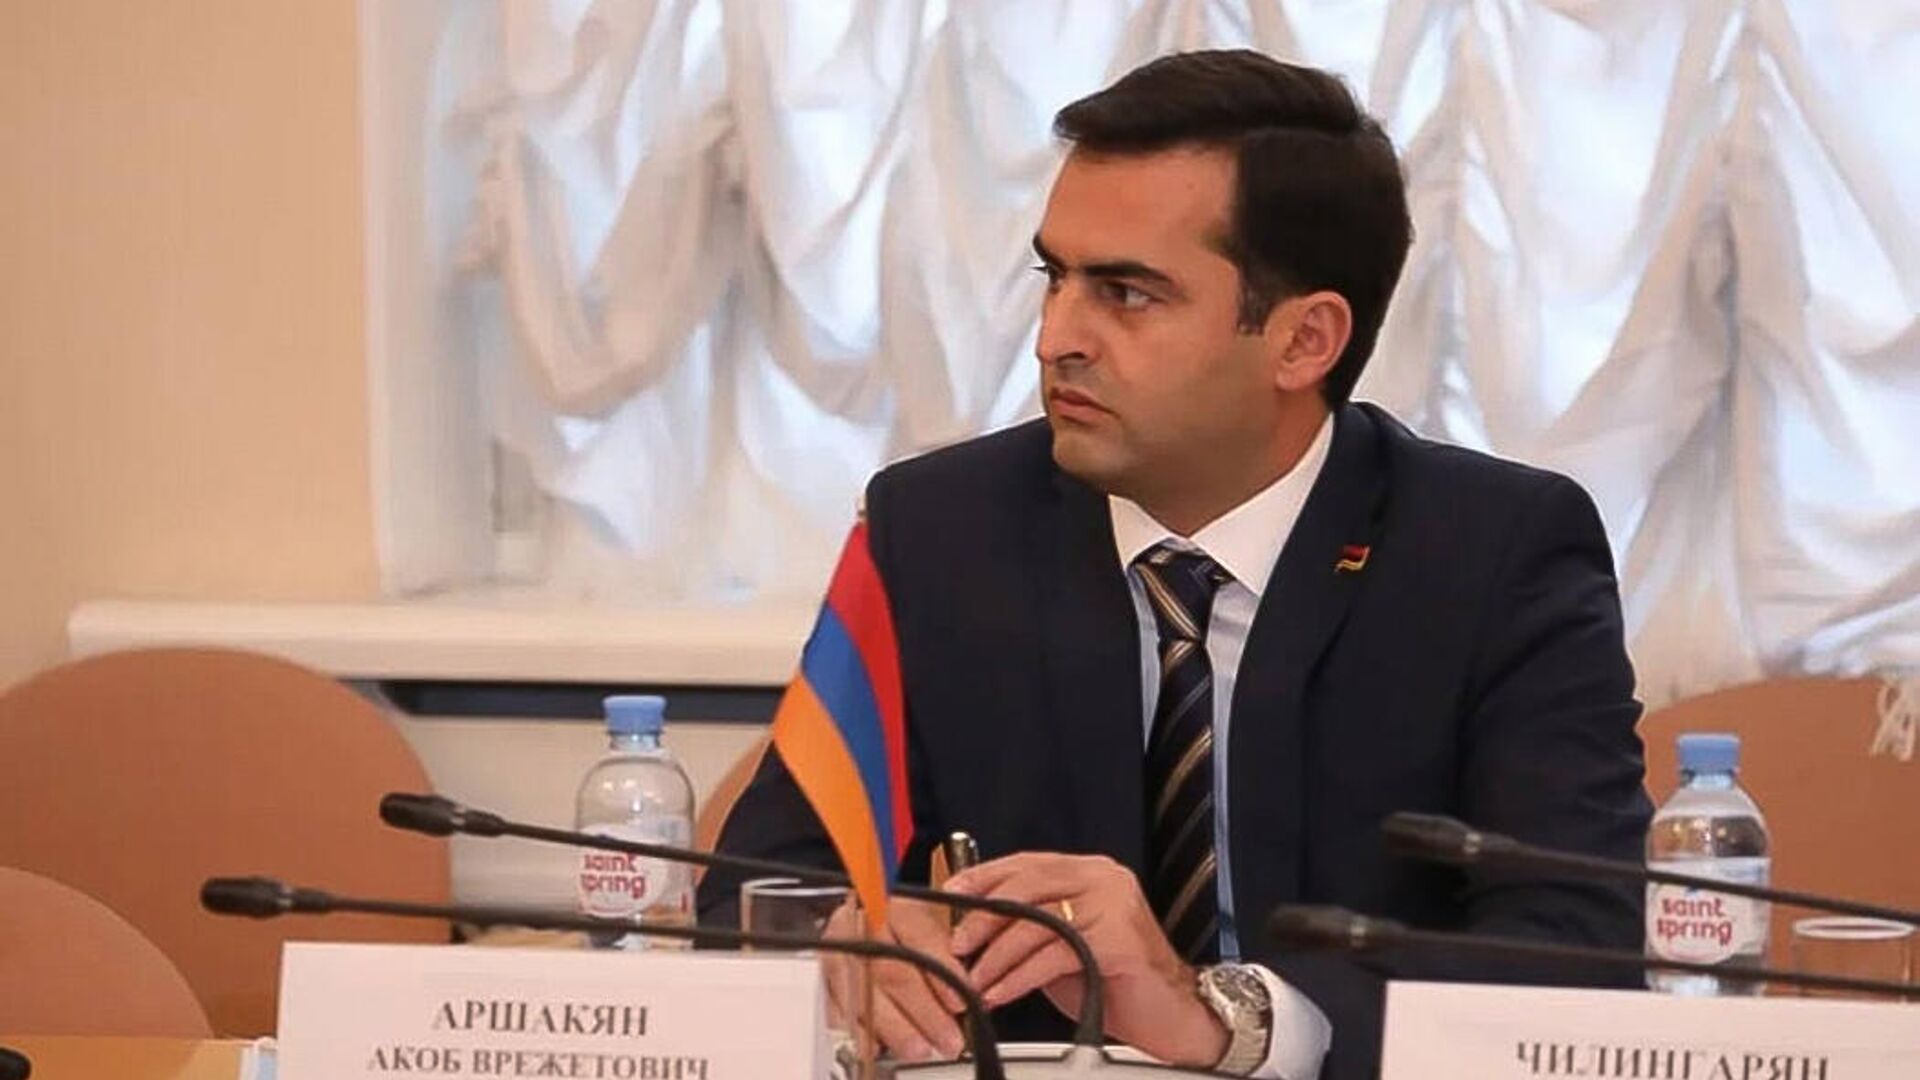 Вице-спикер парламента Армении Аршакян призвал изменить отношения с турецким народом